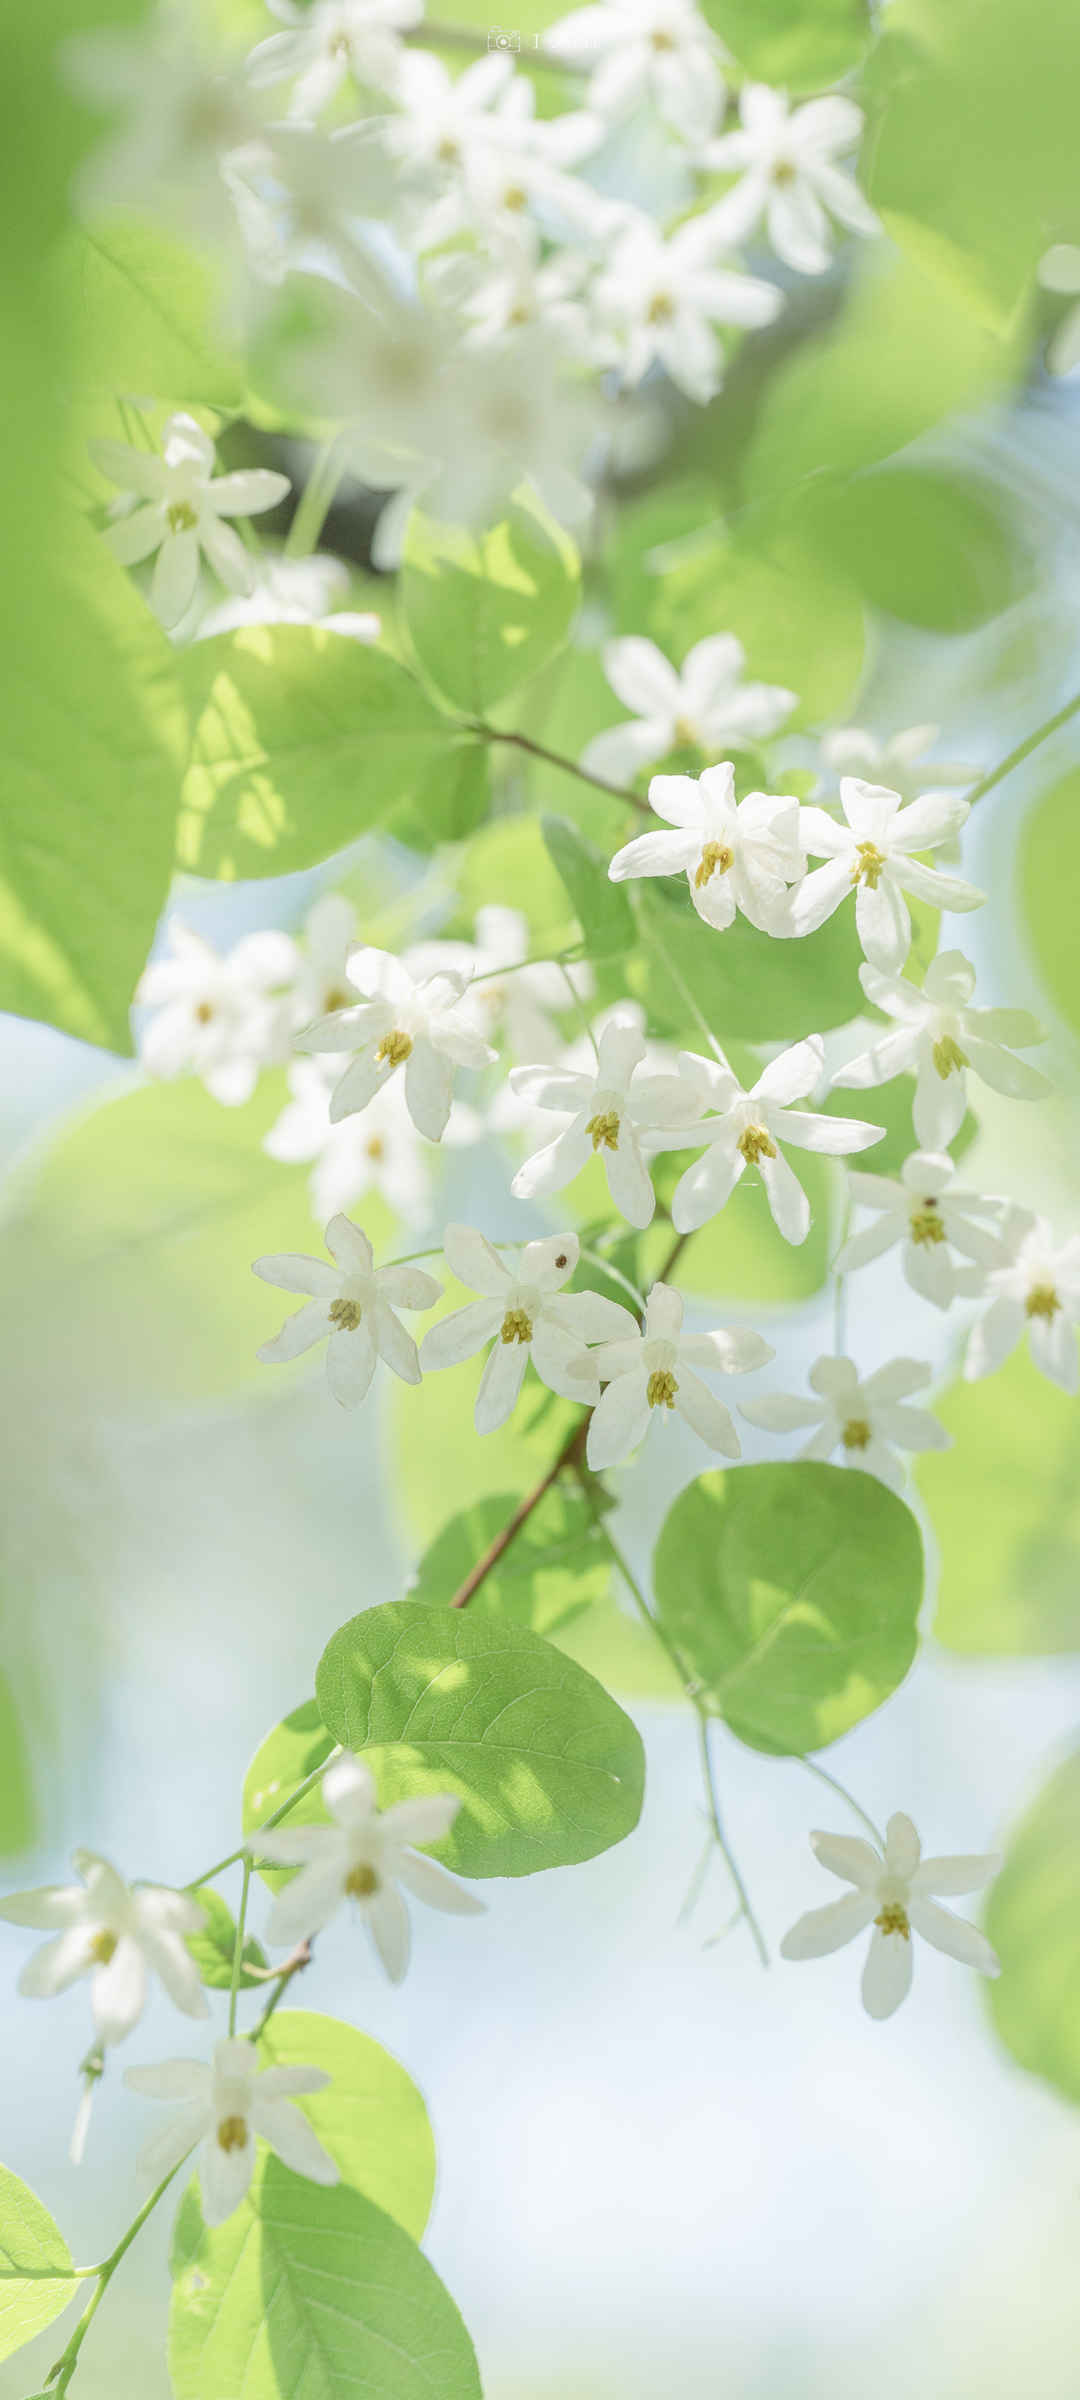 清新淡雅的图片花朵白色绿叶